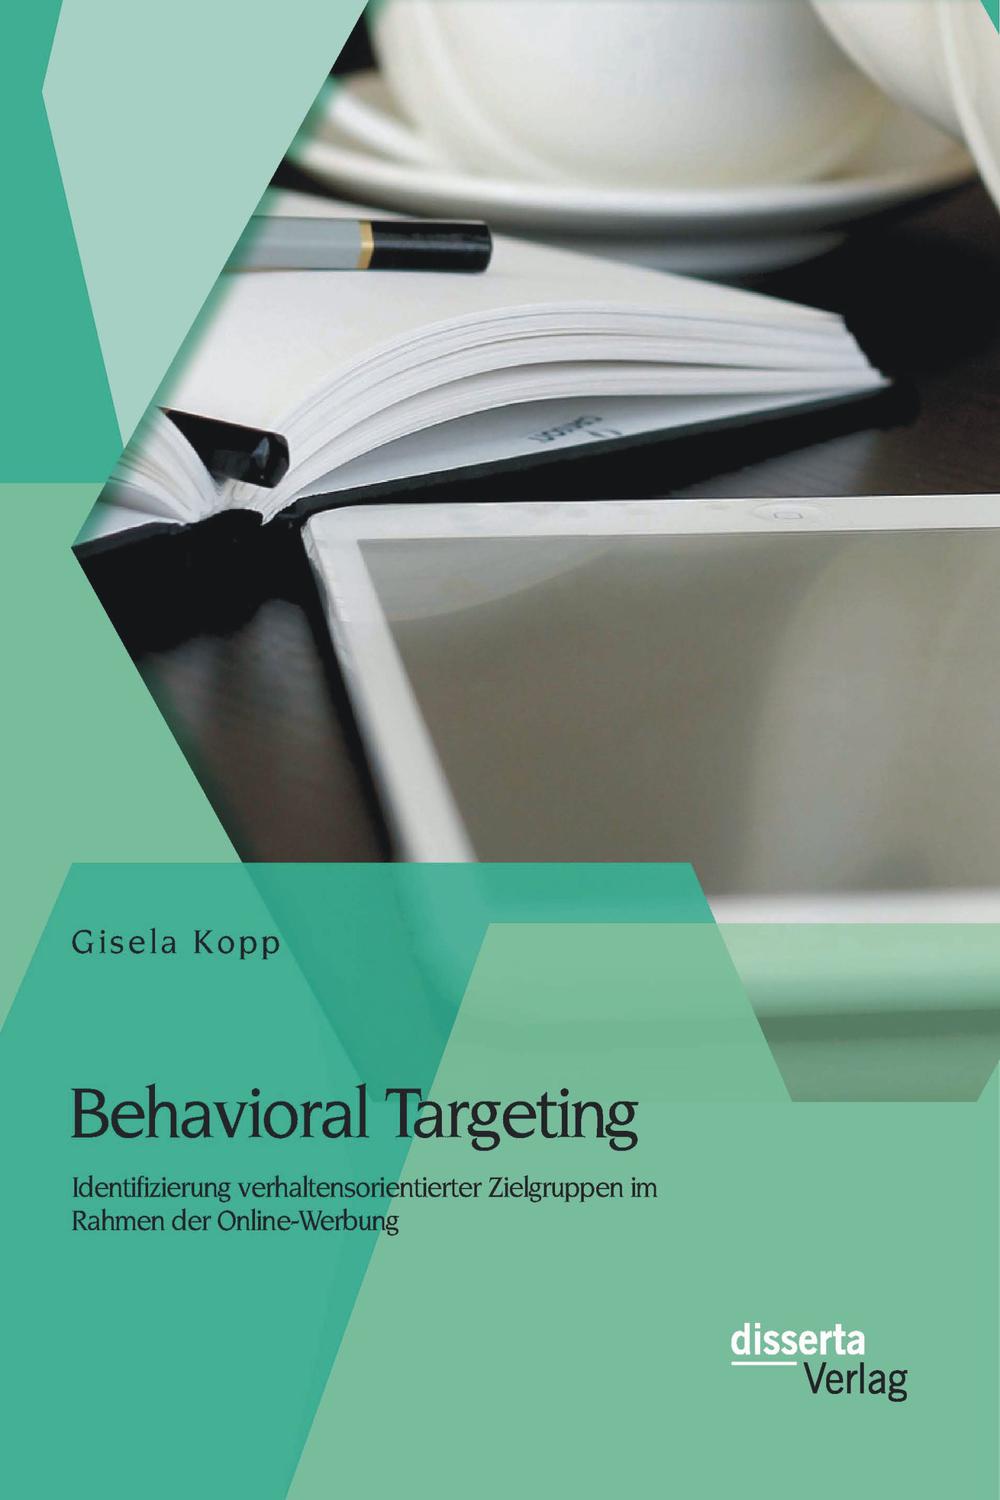 Behavioral Targeting: Identifizierung verhaltensorientierter Zielgruppen im Rahmen der Online-Werbung - Gisela Kopp